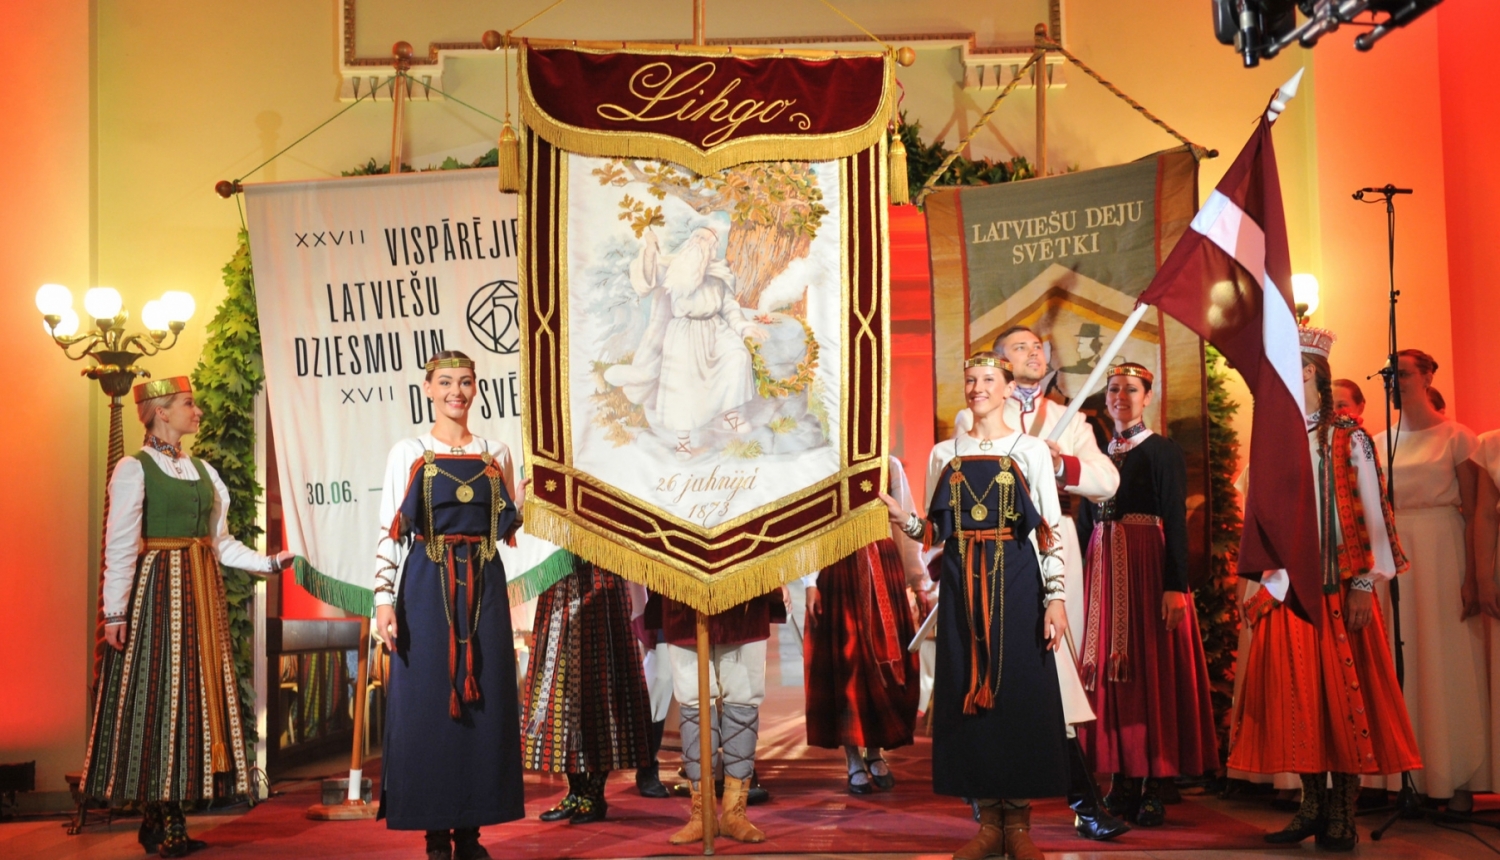 Svētku karoga cildināšana Rīgas Latviešu biedrības namā, foto: Aivars Liepiņš